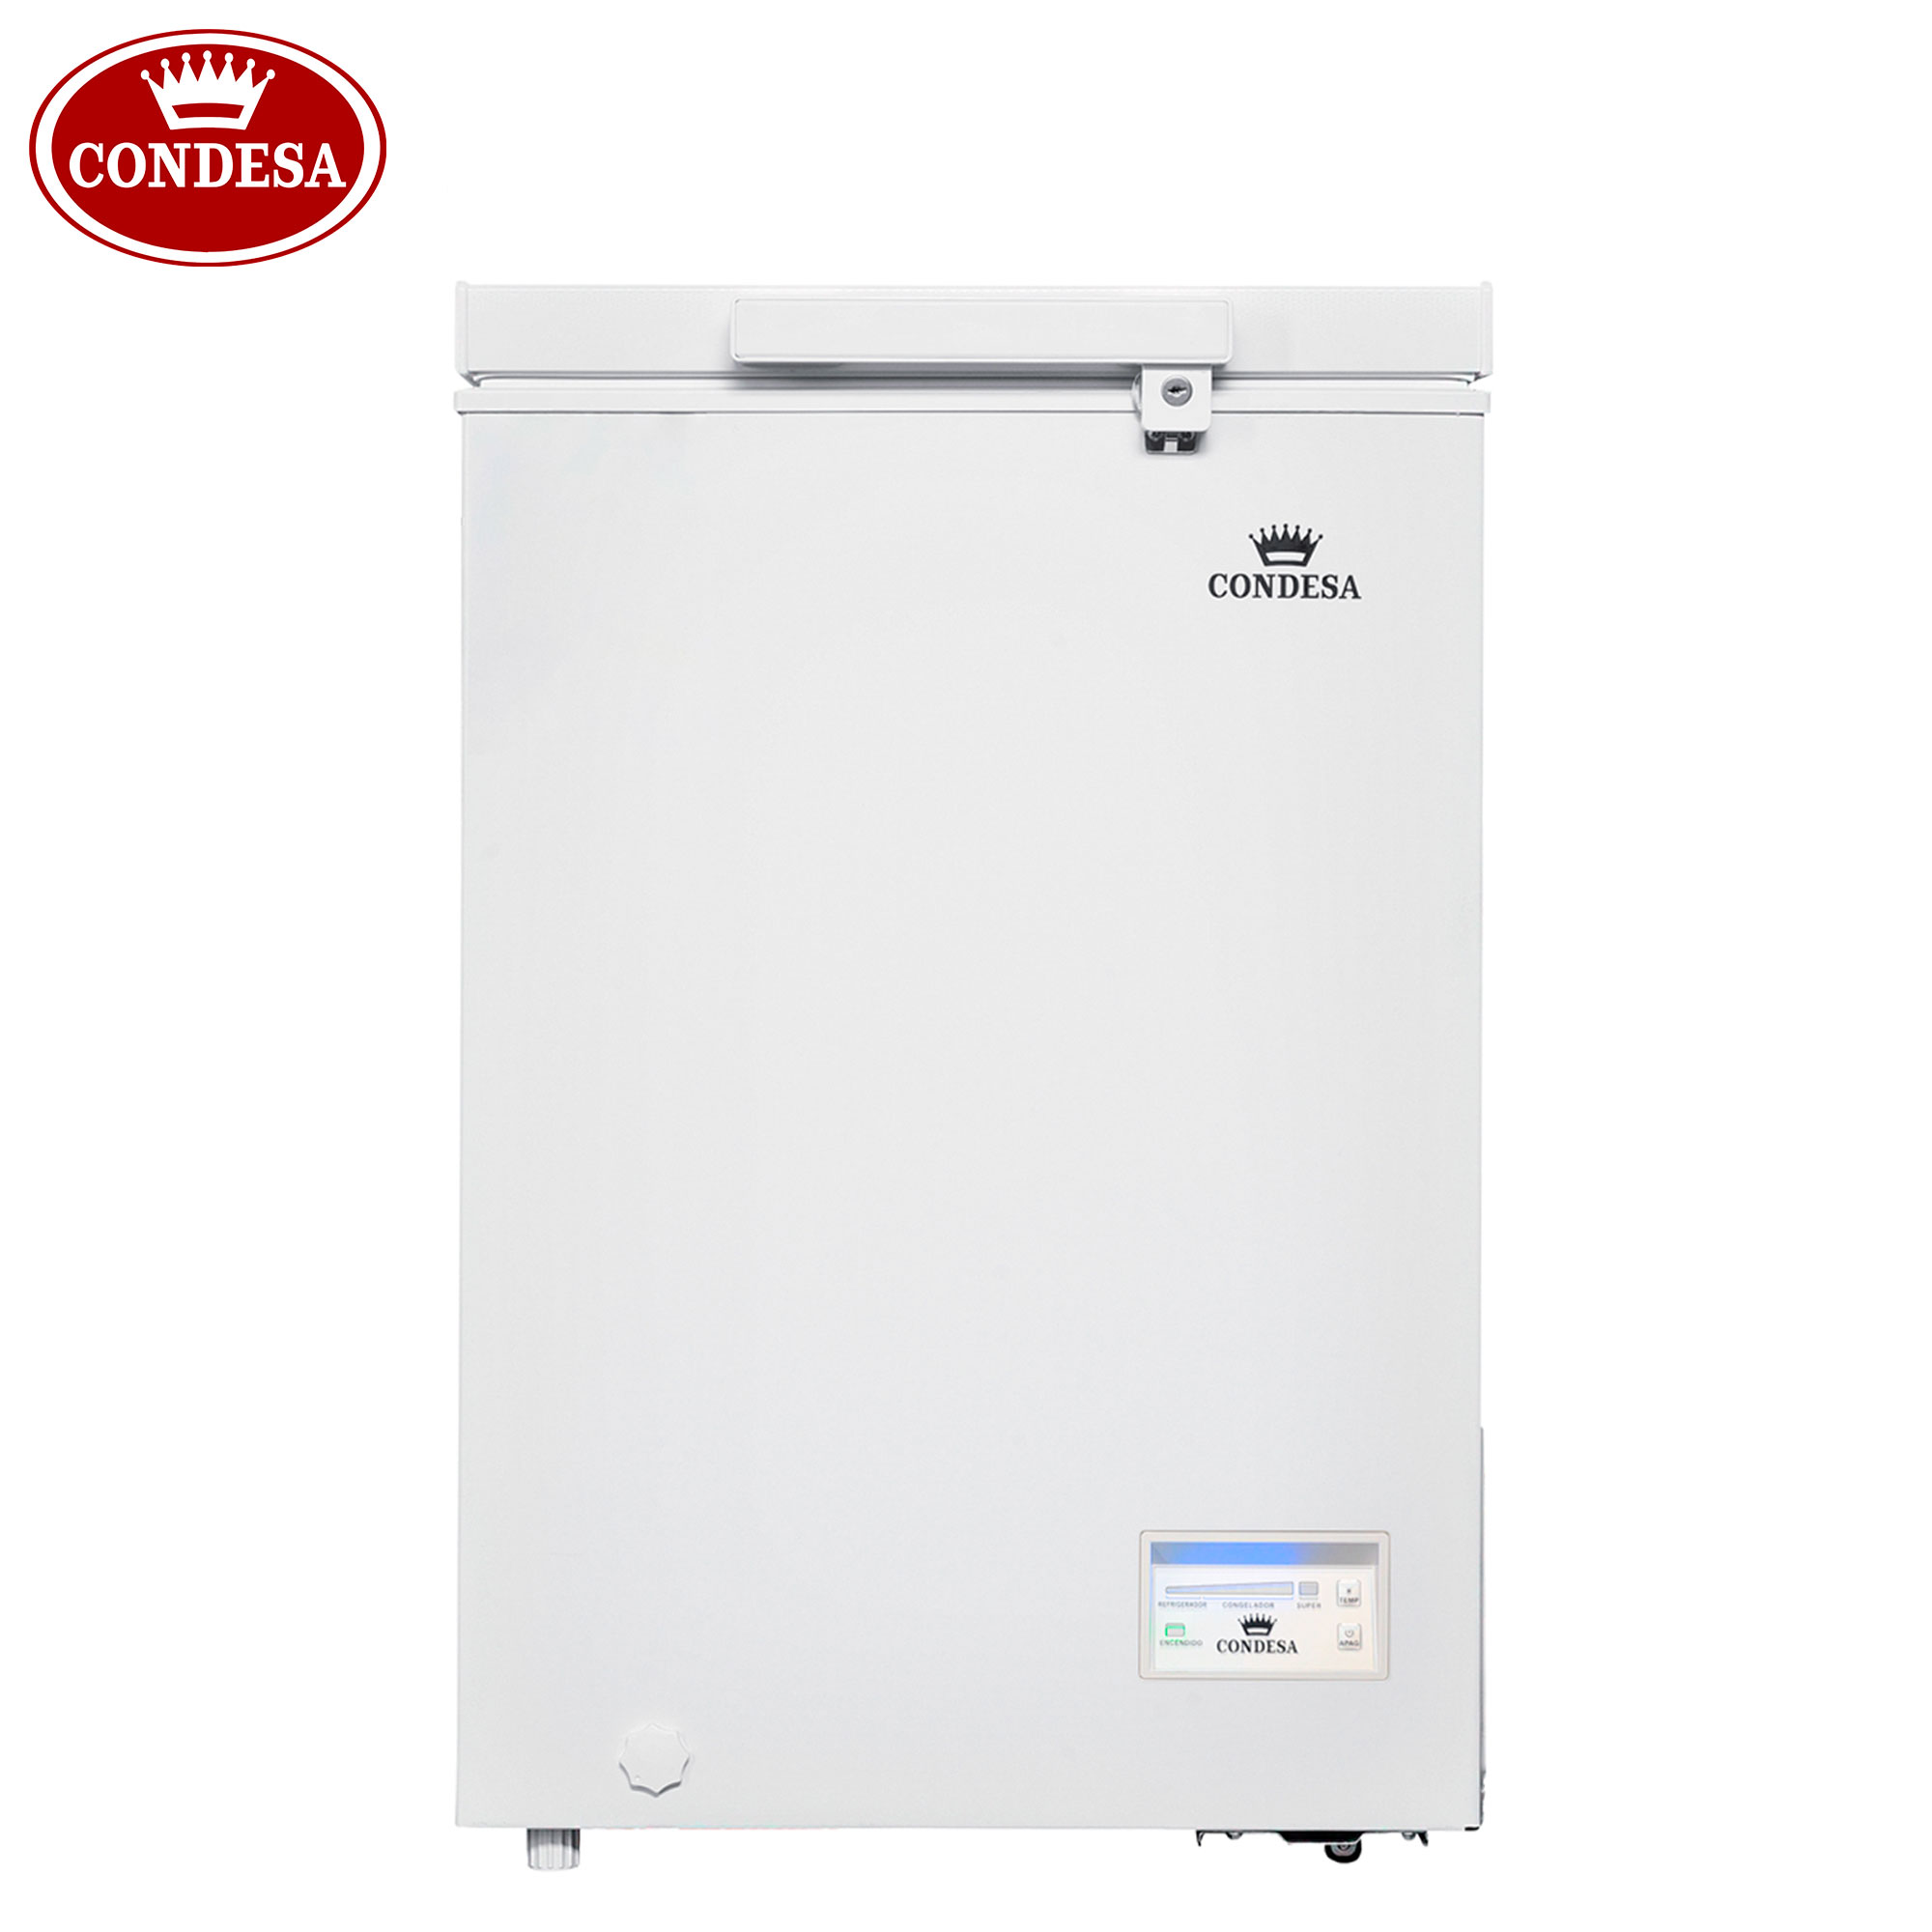 Dcg MF1100CDP Frigo con congelatore a libera installazione - cm 45x46x86 -  68lt. - inox